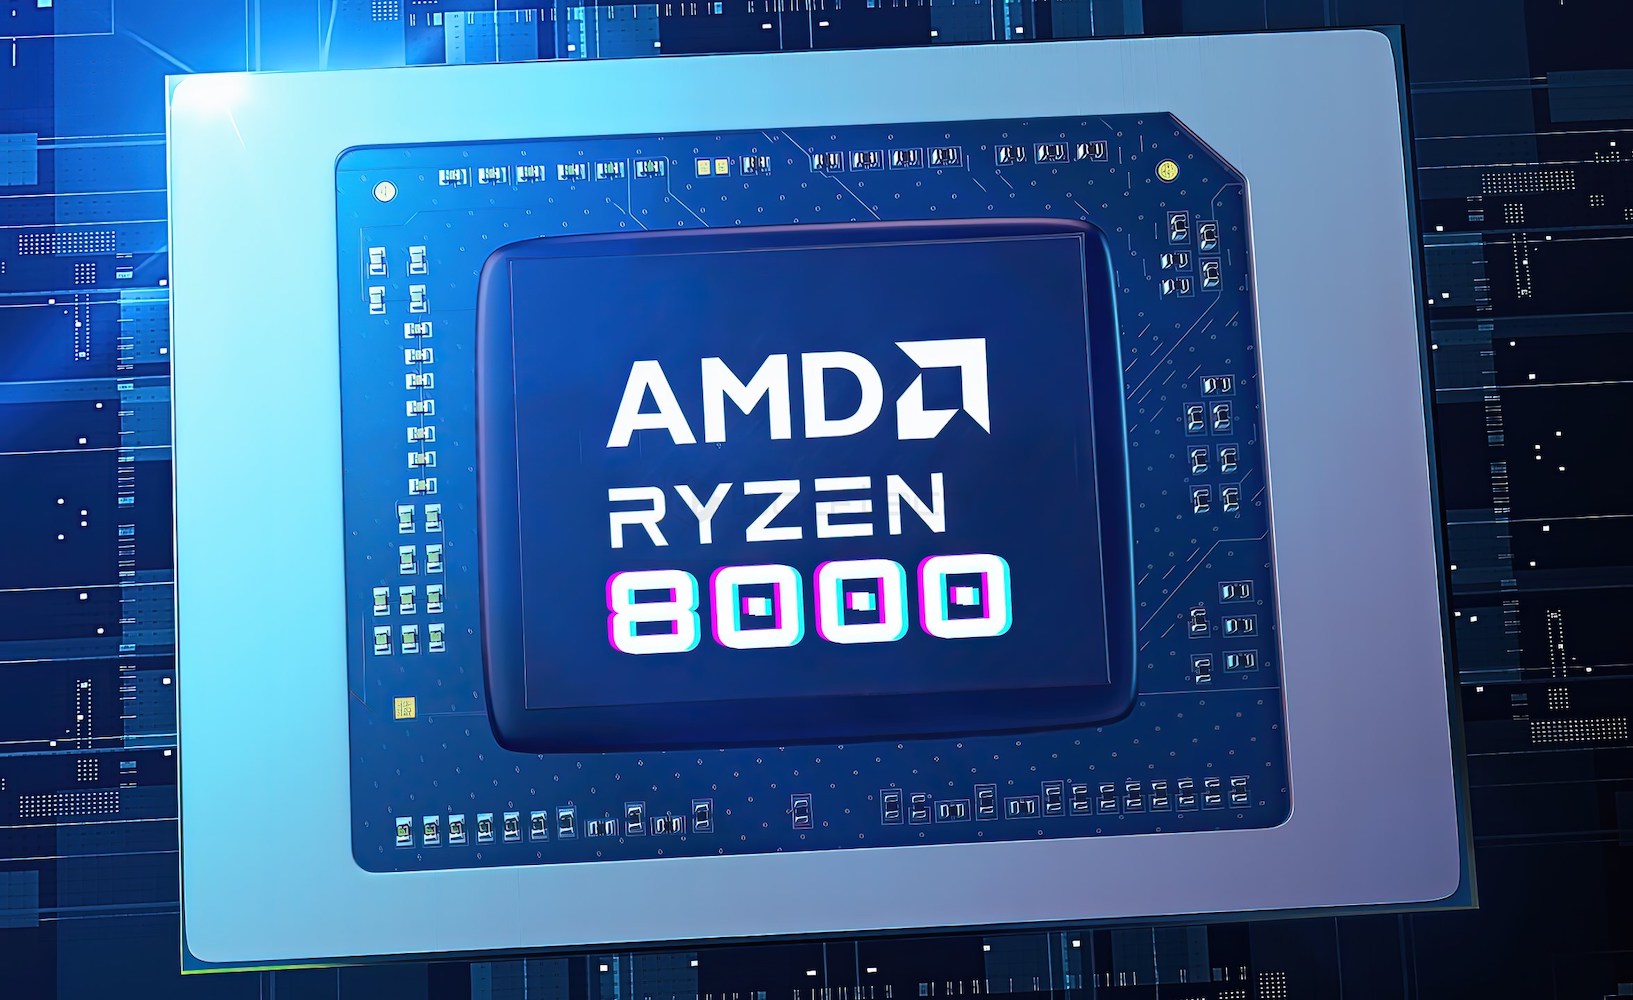 Иранский (!) магазин раскрыл спецификации процессора AMD Ryzen 8000G AM5 — х2,5 прирост в игровых бенчмарках, сравнивая с Ryzen 5000G